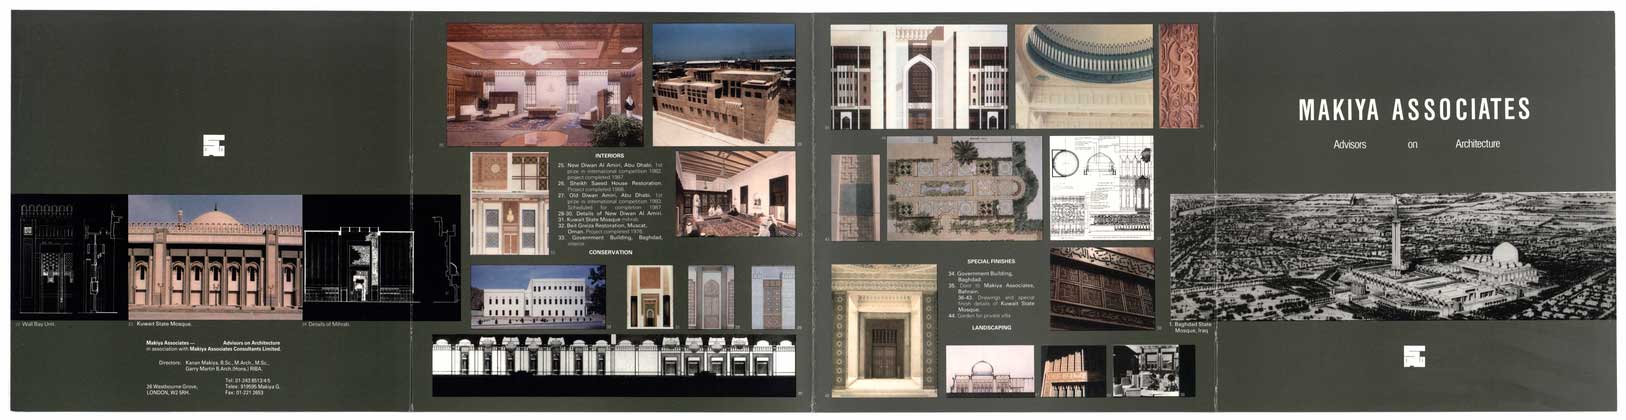 Makiya Associates Advisors on Architecture brochure (full view, side 1 of 2)